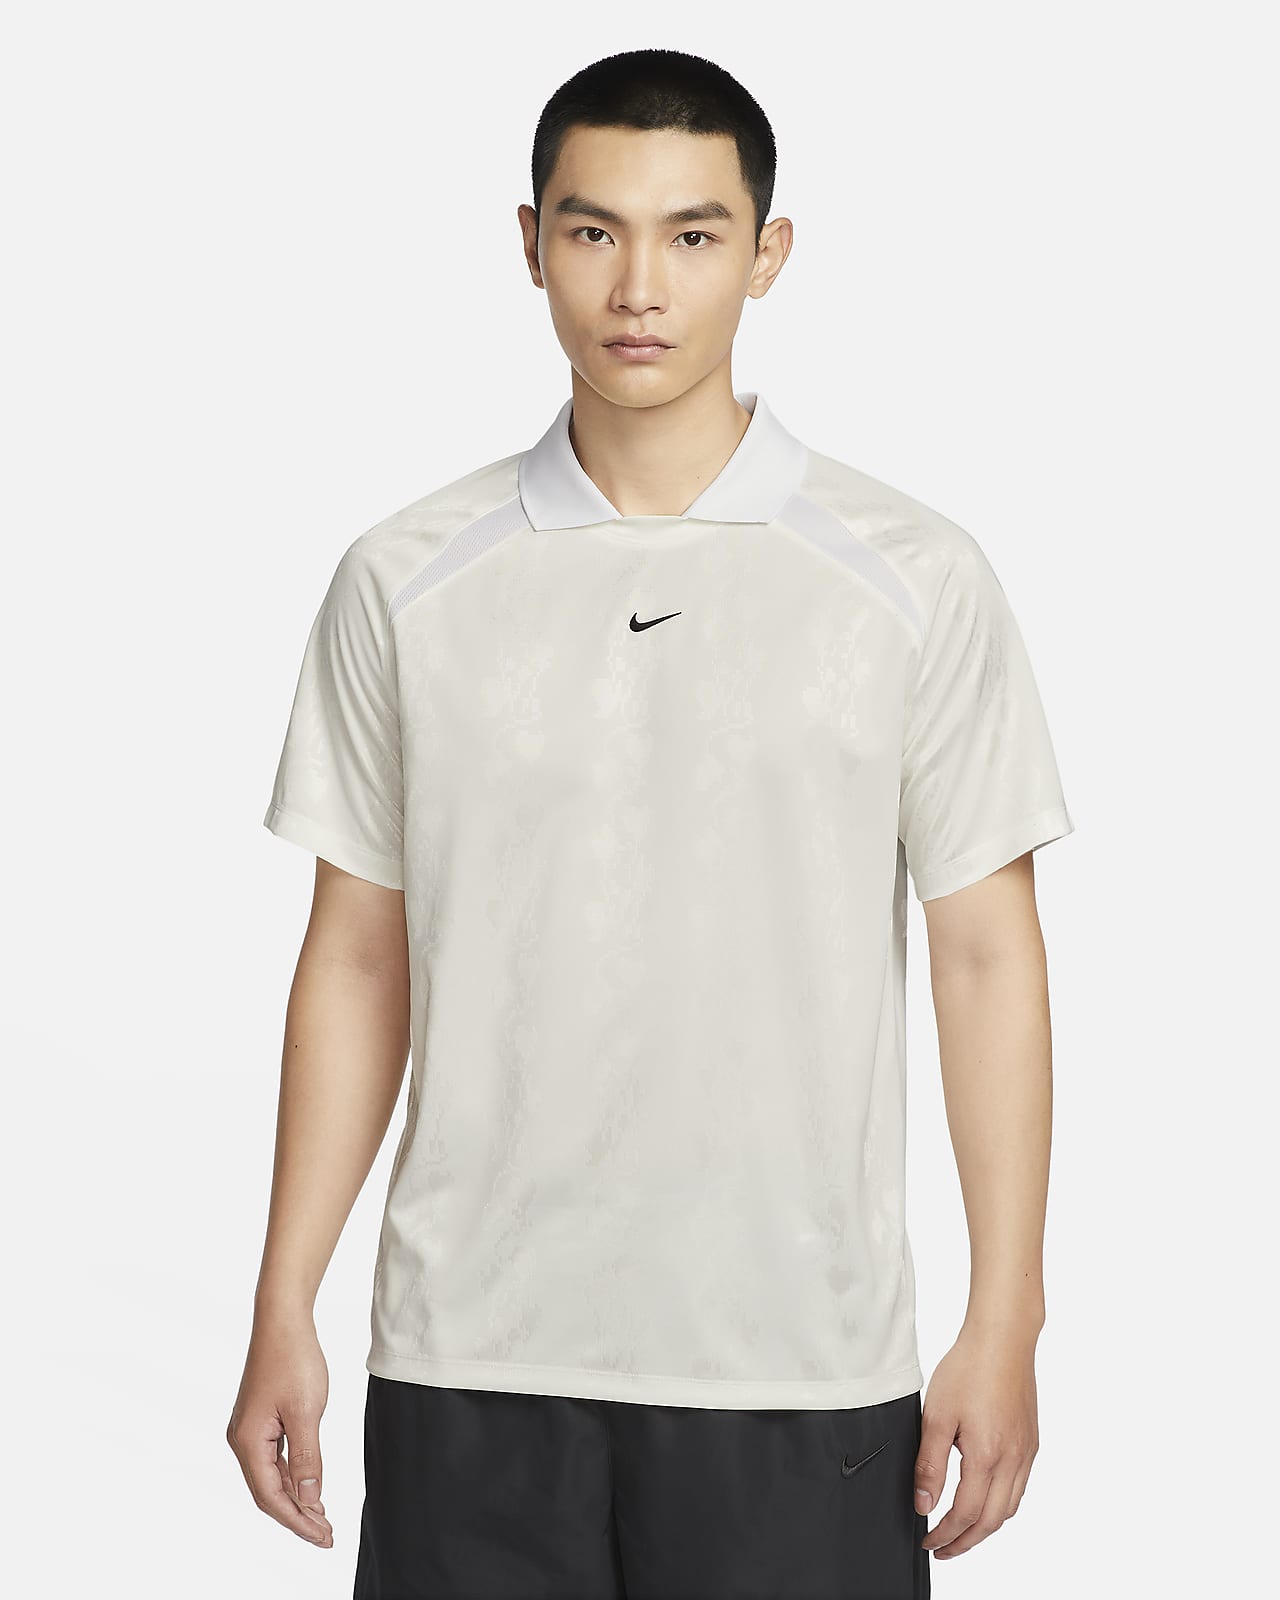 Nike Culture of Football Dri-FIT 男子速干短袖足球上衣